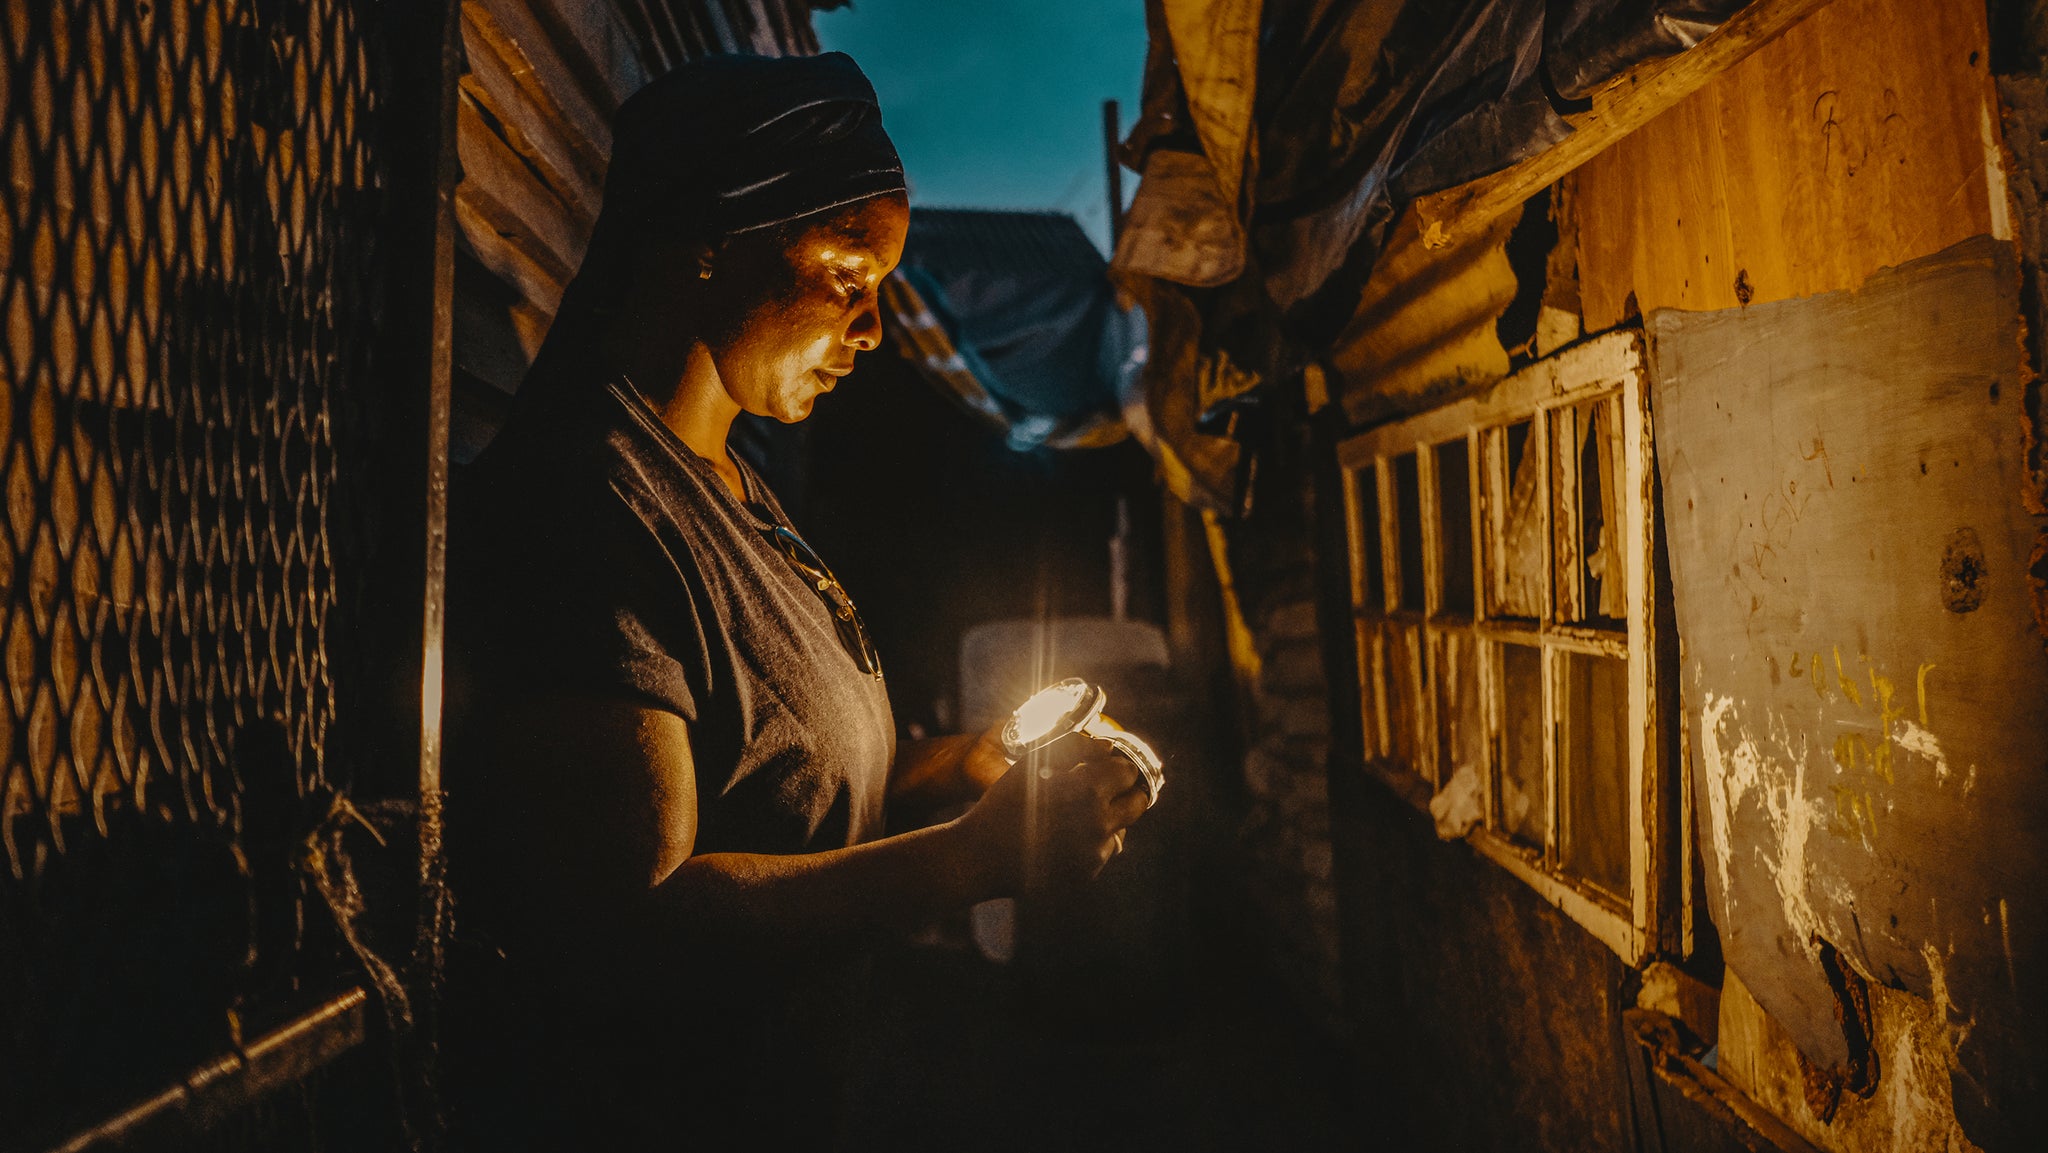 Sonnenglas|Vrouw in township Zuid-Afrika met lamp aan